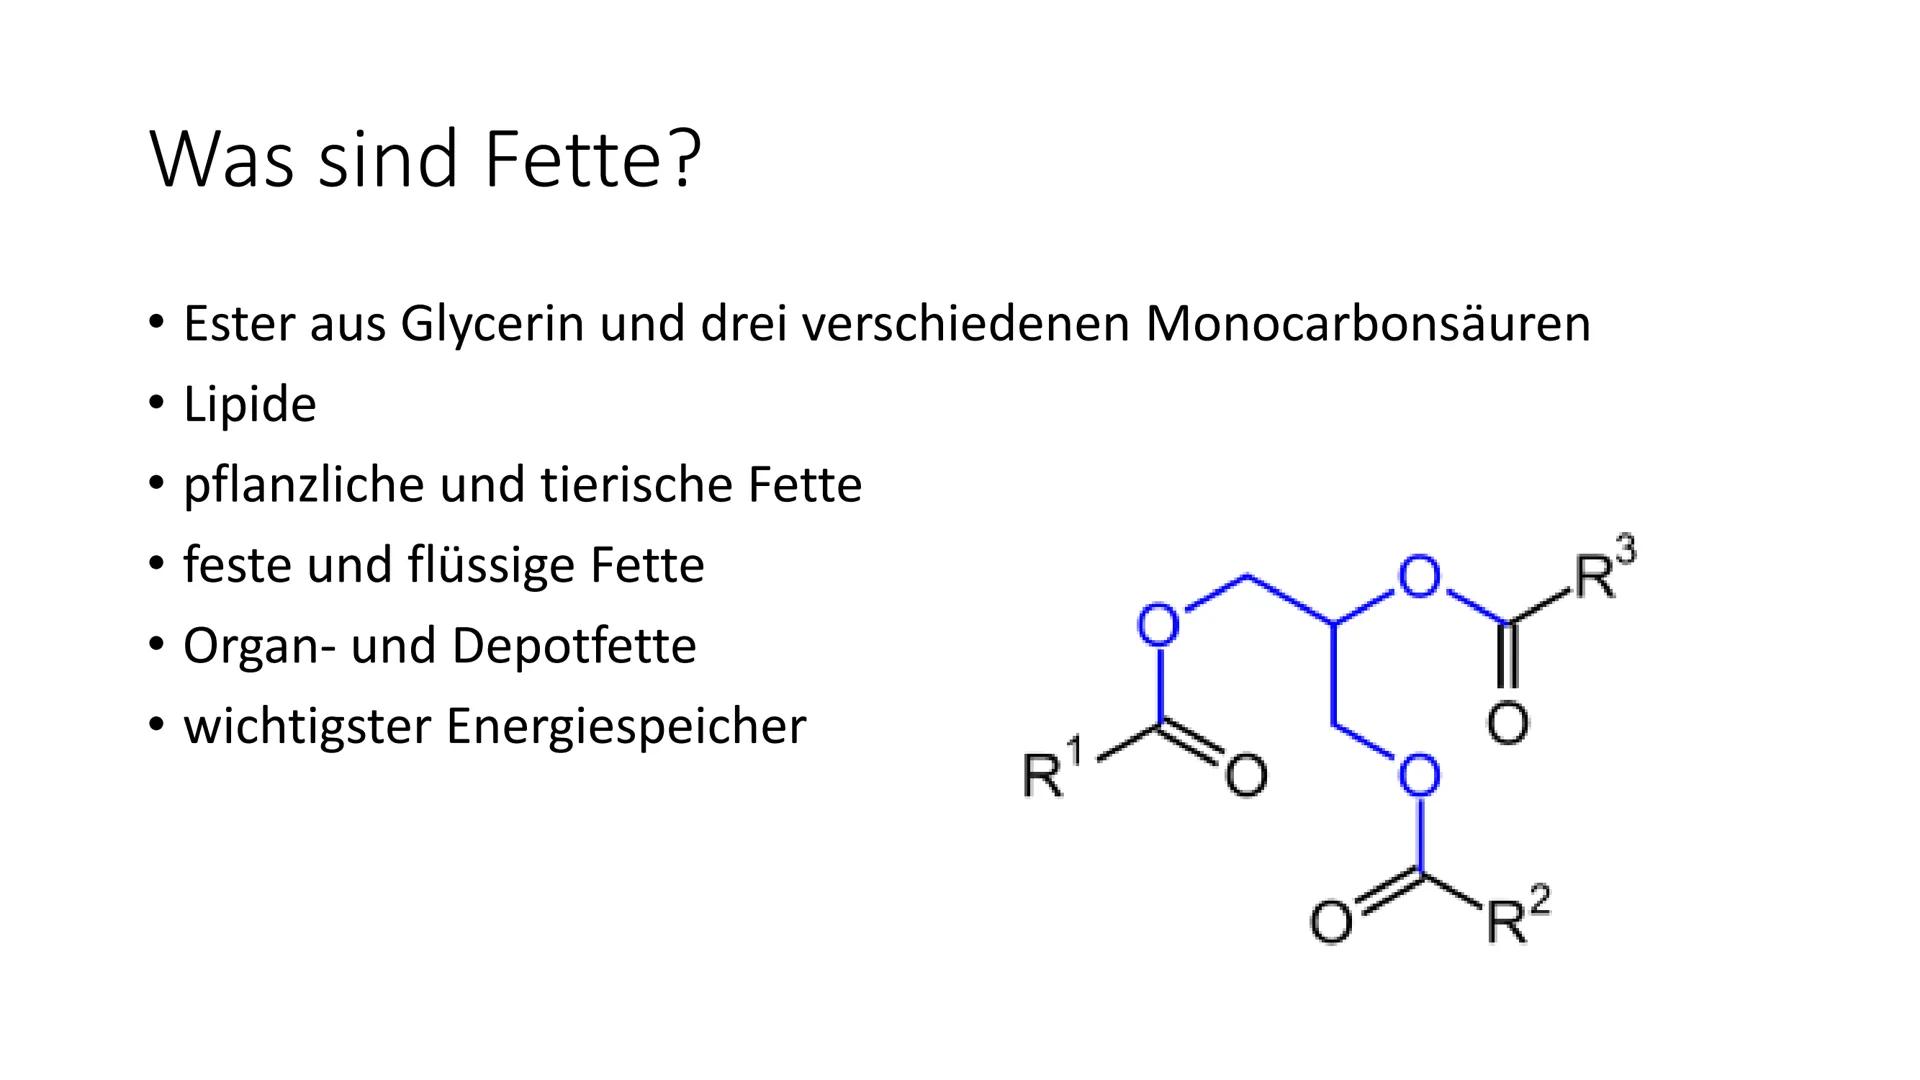 Handout: Fette
1. Was sind Fette?
- Ester aus Glycerin und drei verschiedenen Monocarbonsäuren (Fettsäuren)
- Einteilung in: pflanzliche und